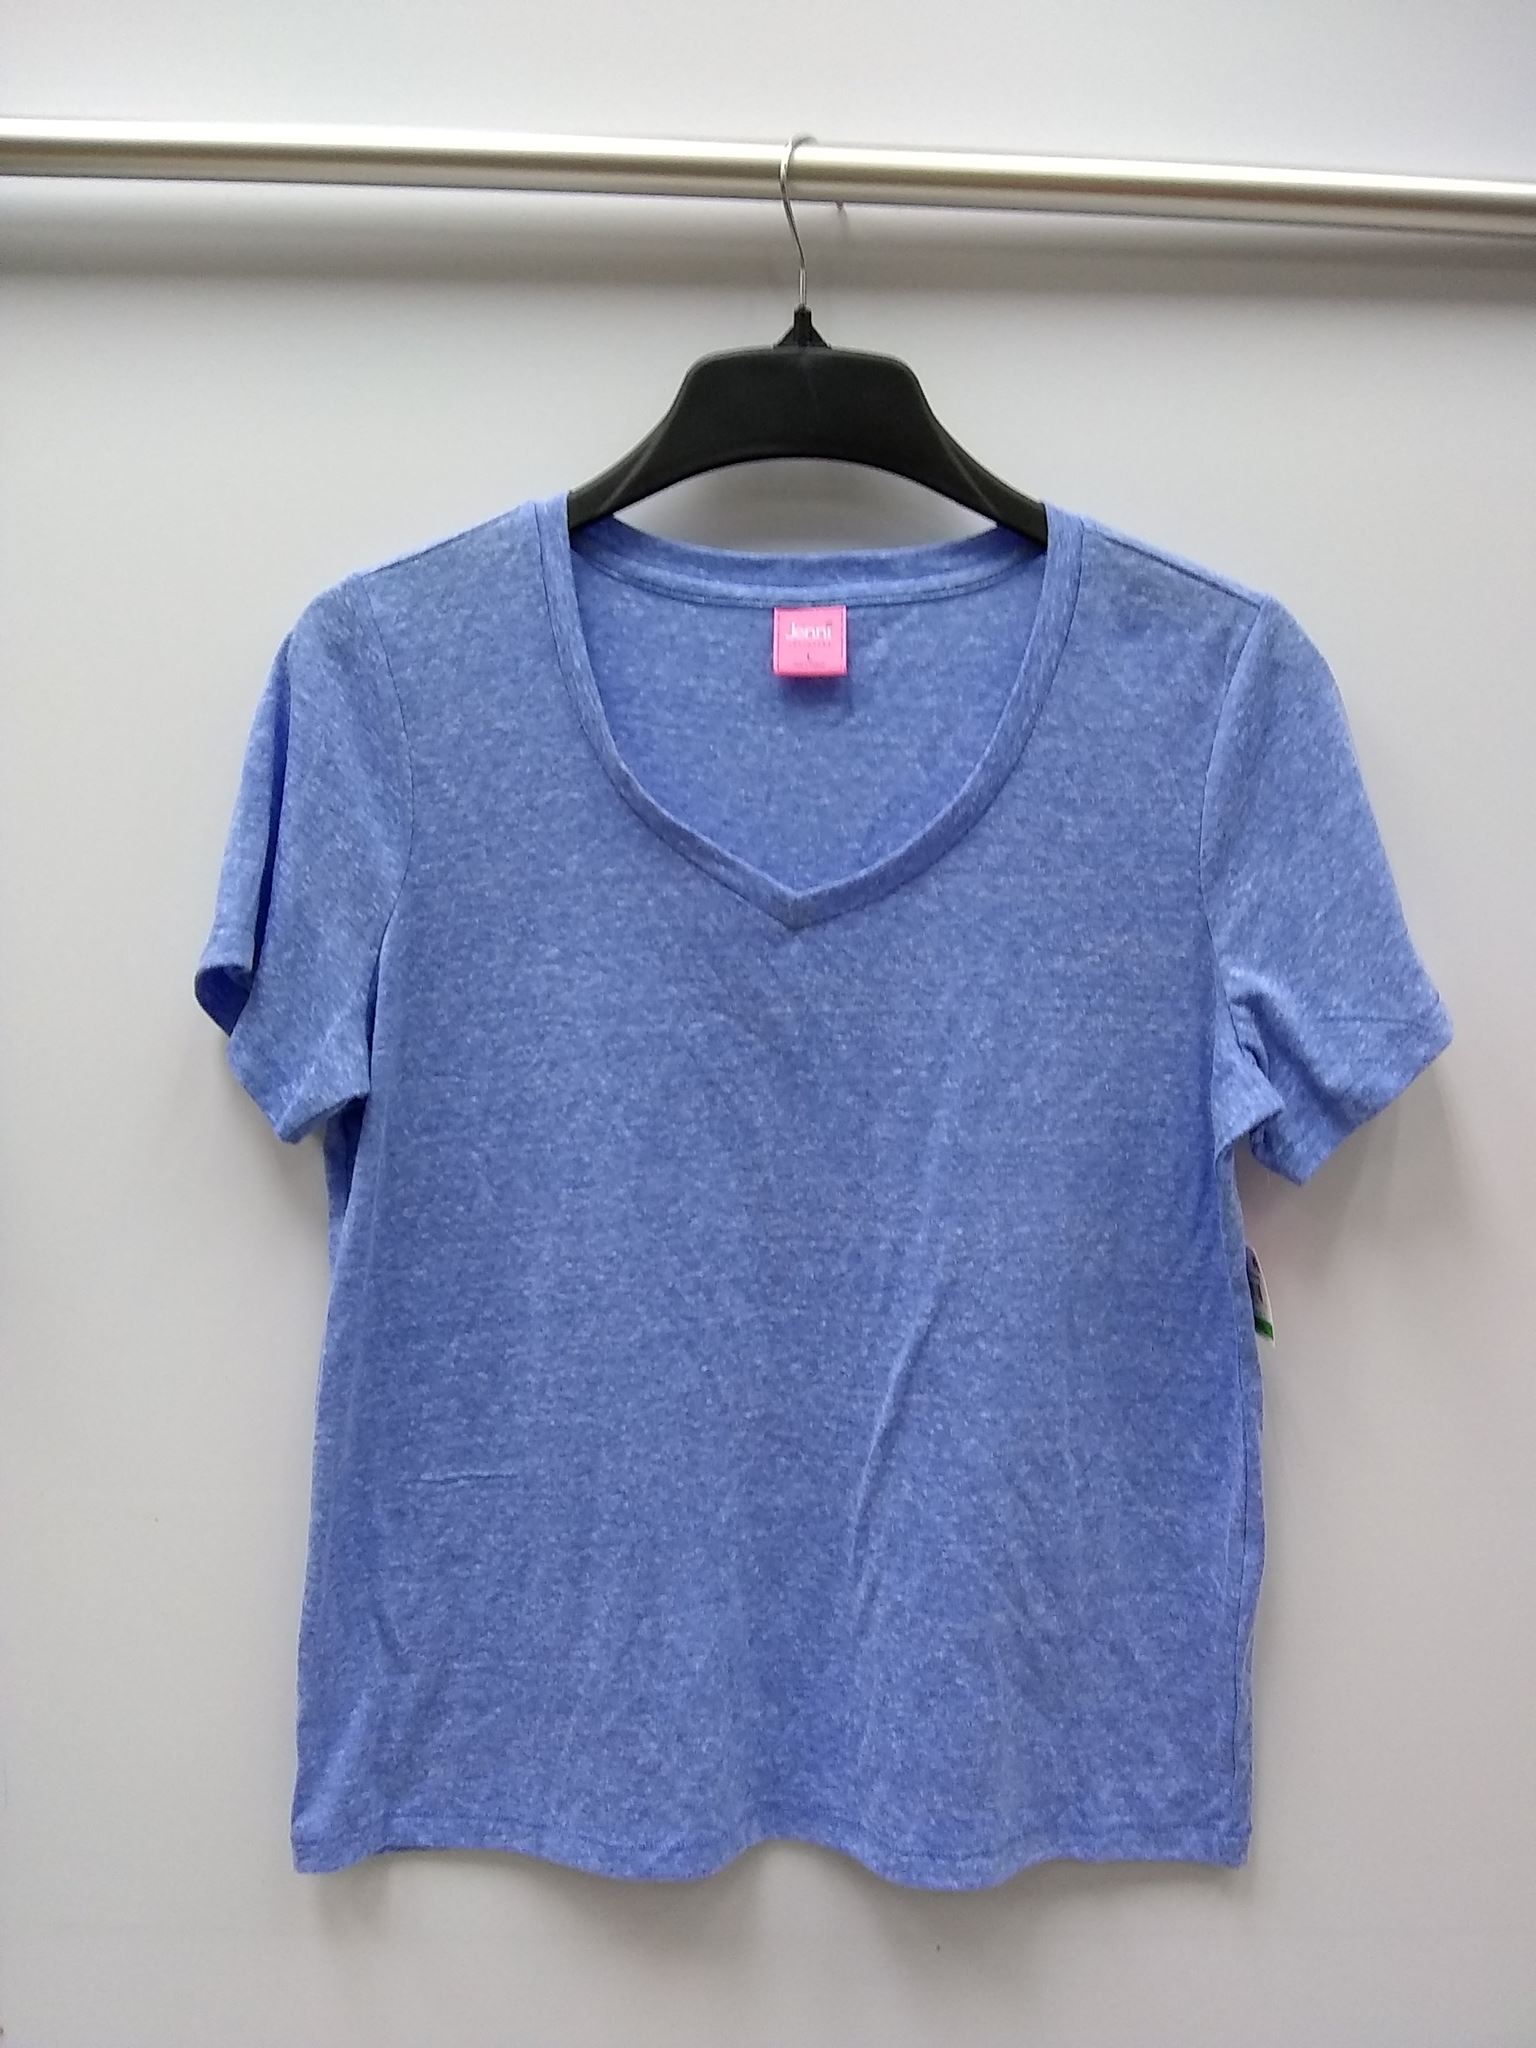 Jenni V-Neck Pajama T-Shirt Light Blue L -NEW WITHOUT TAG 608356828615 ...